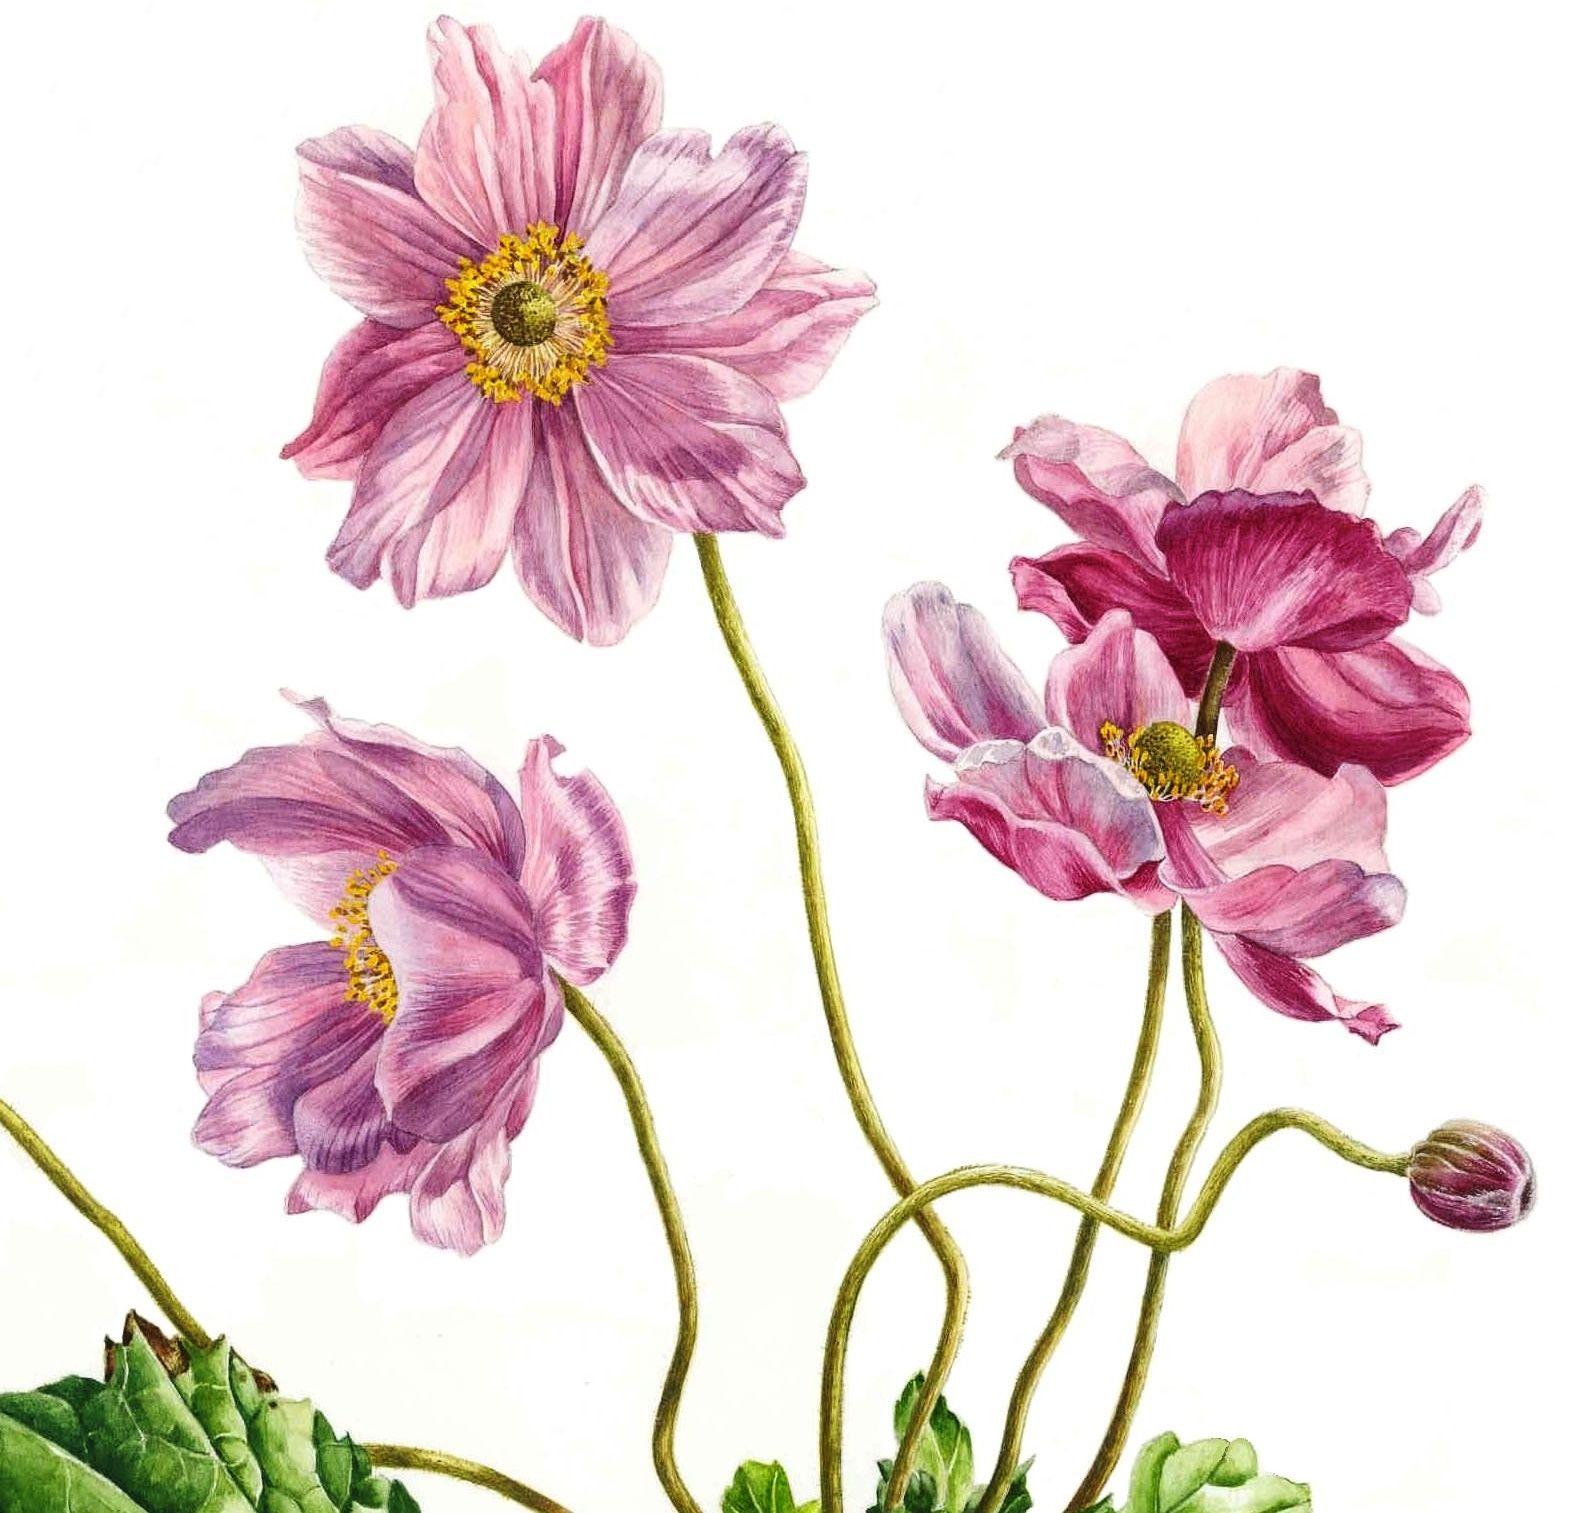 Wind Flowers, Painting, Watercolor on Paper - Realist Art by Zoe Elizabeth Norman